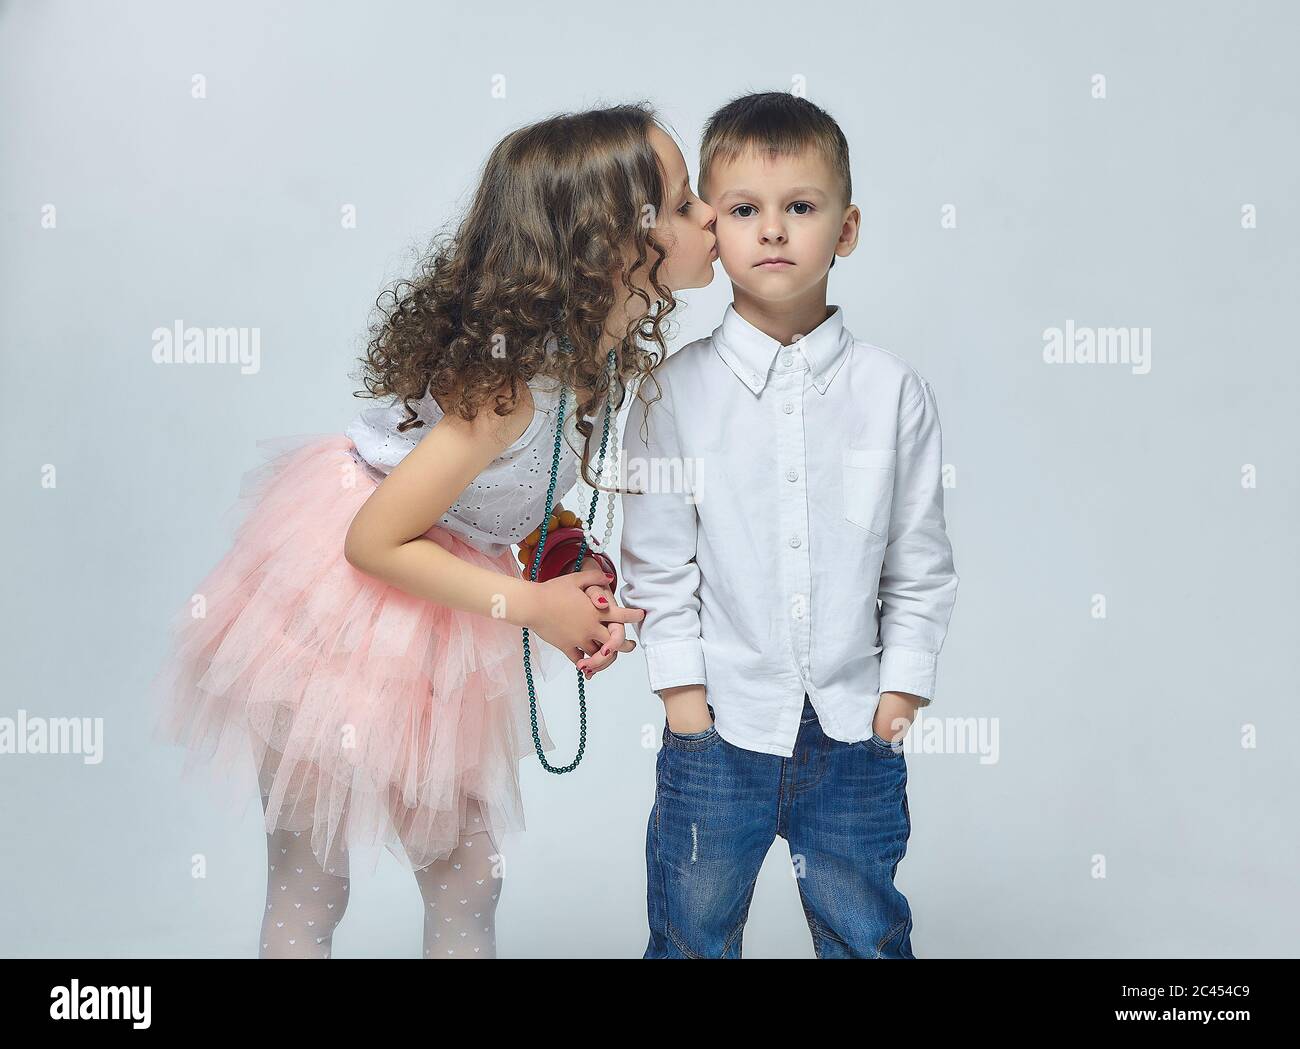 Kleines Mädchen küsst einen Jungen. Schöne Foto-Session im Studio, Weiß zurück Stockfoto